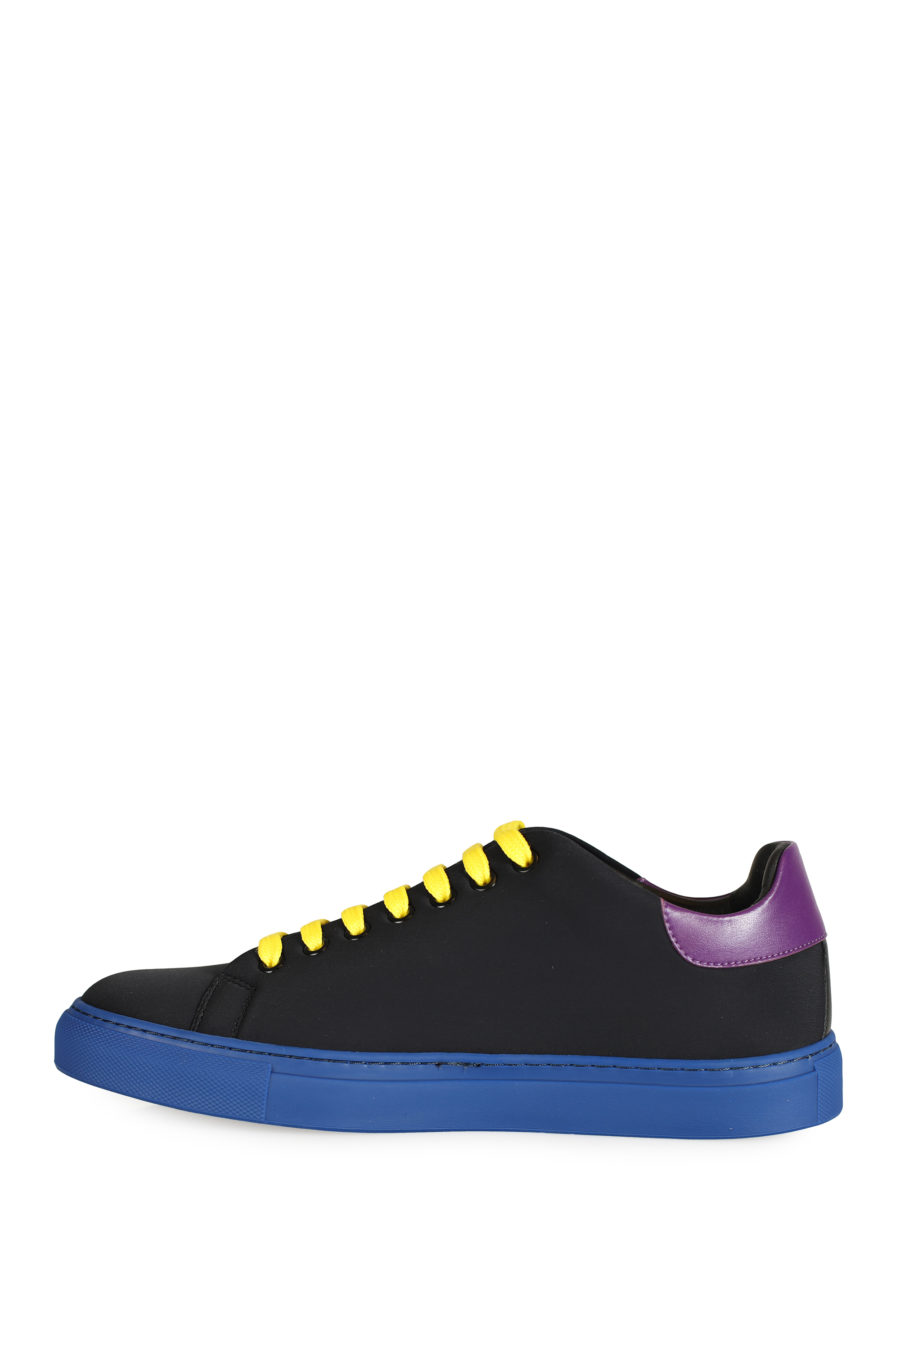 Zapatillas negras con detalles de colores - IMG 3320